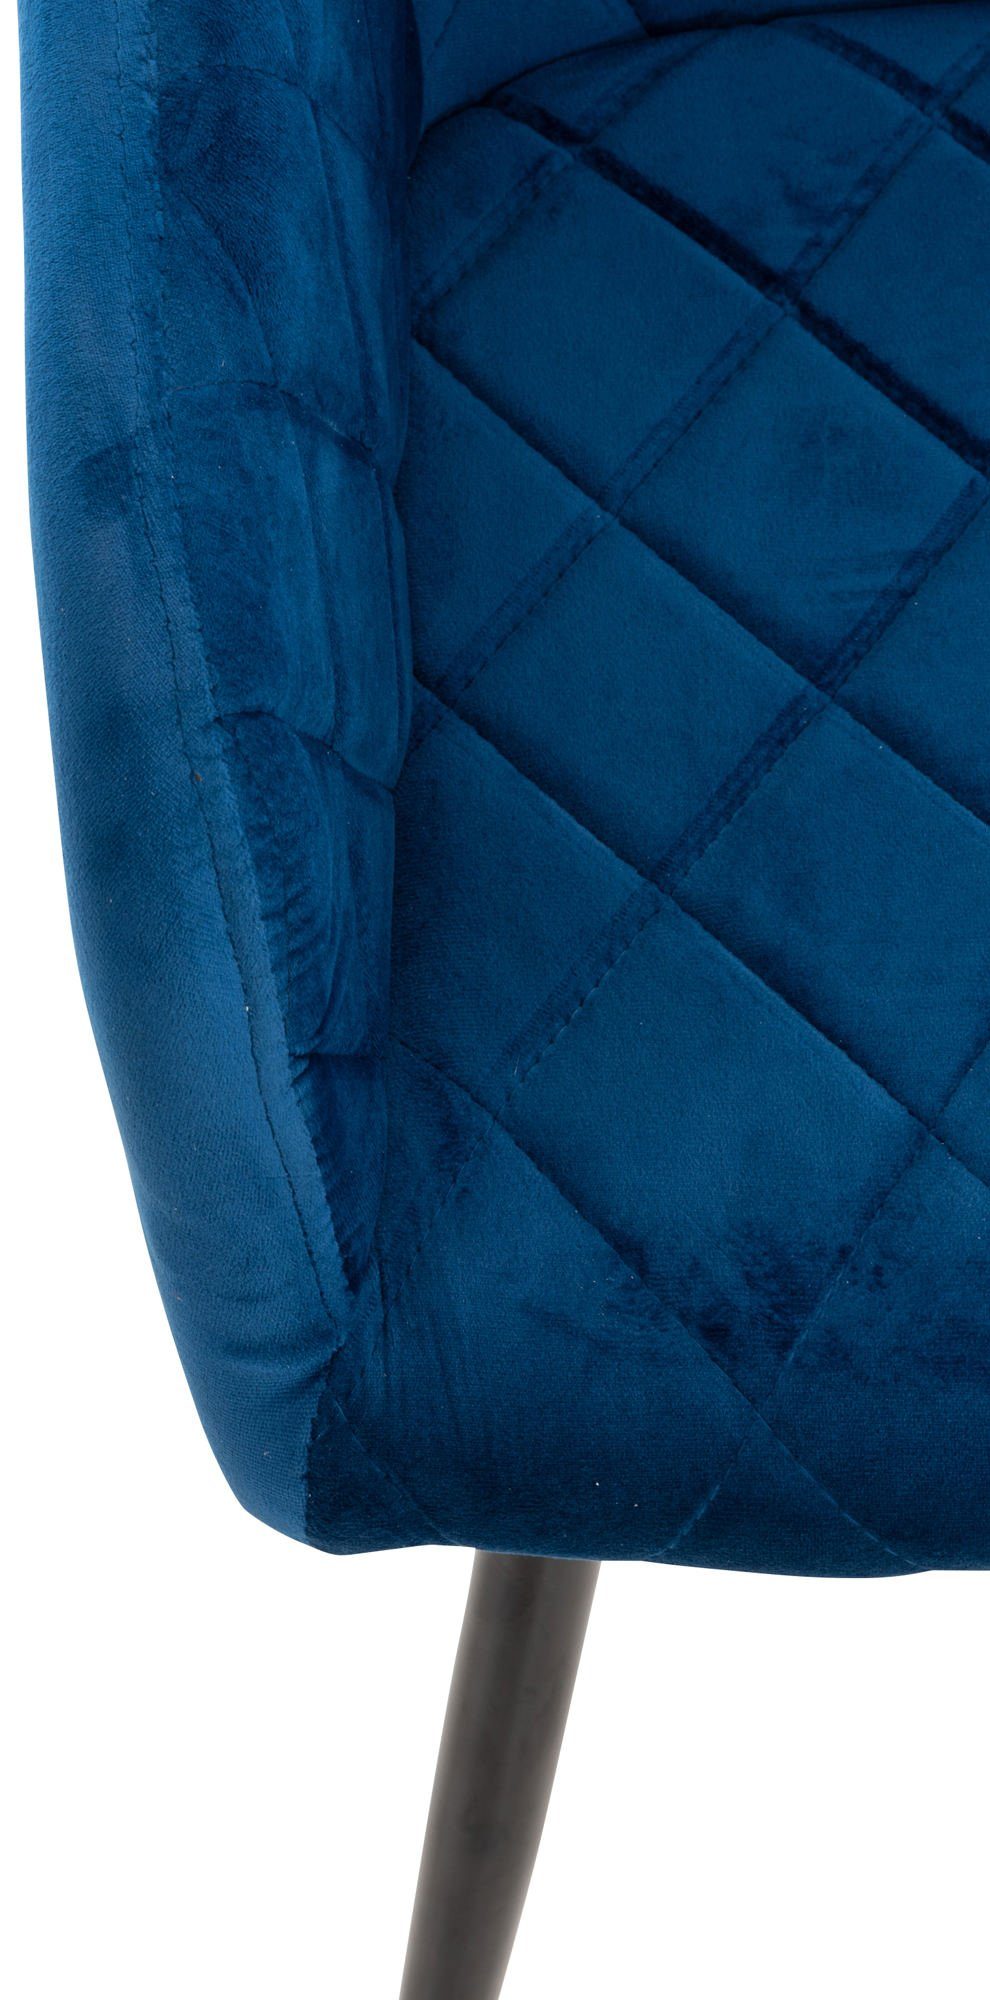 TPFLiving Esszimmerstuhl - Konferenzstuhl Gestell: Samt Sitzfläche: Sitzfläche blau gepolsterter mit - Shyva (Küchenstuhl Esstischstuhl - Wohnzimmerstuhl schwarz Polsterstuhl), - hochwertig Metall 